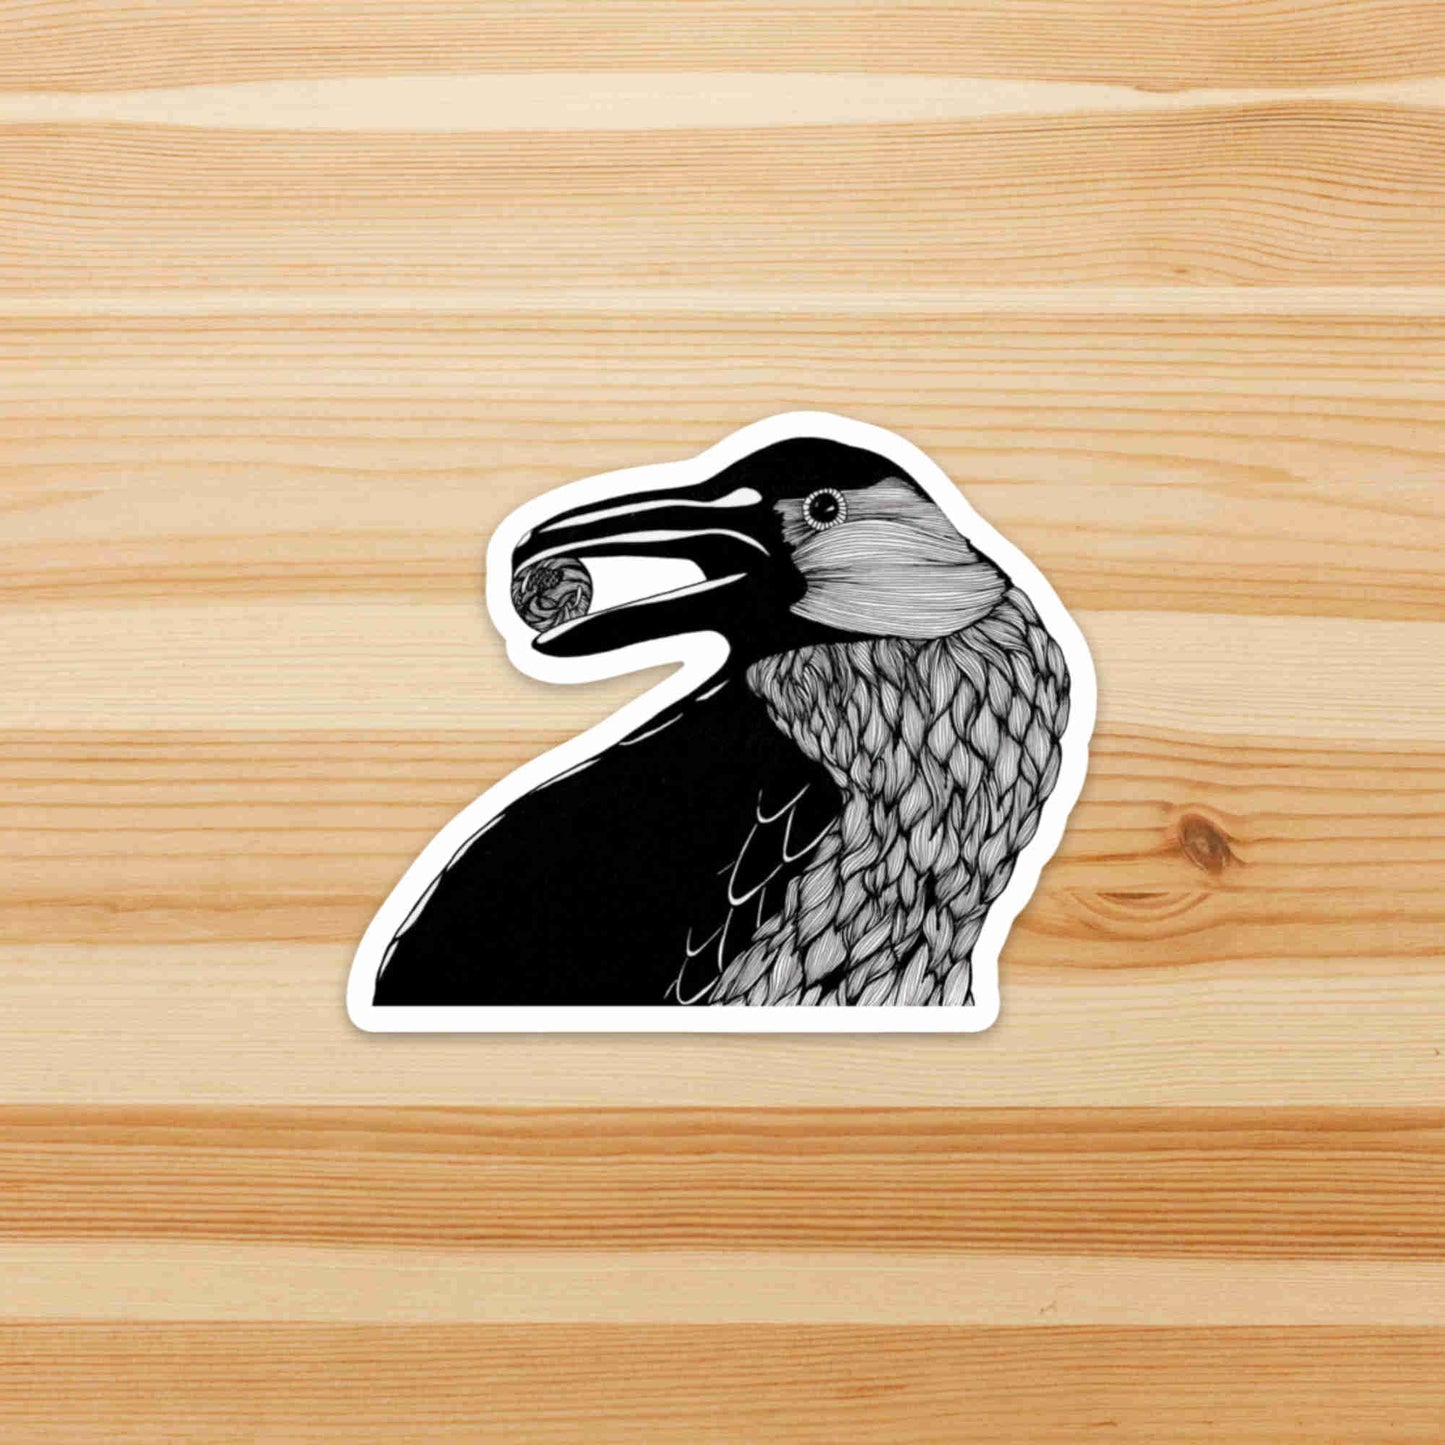 PinkPolish Design Stickers "Raven" Die Cut Vinyl Sticker